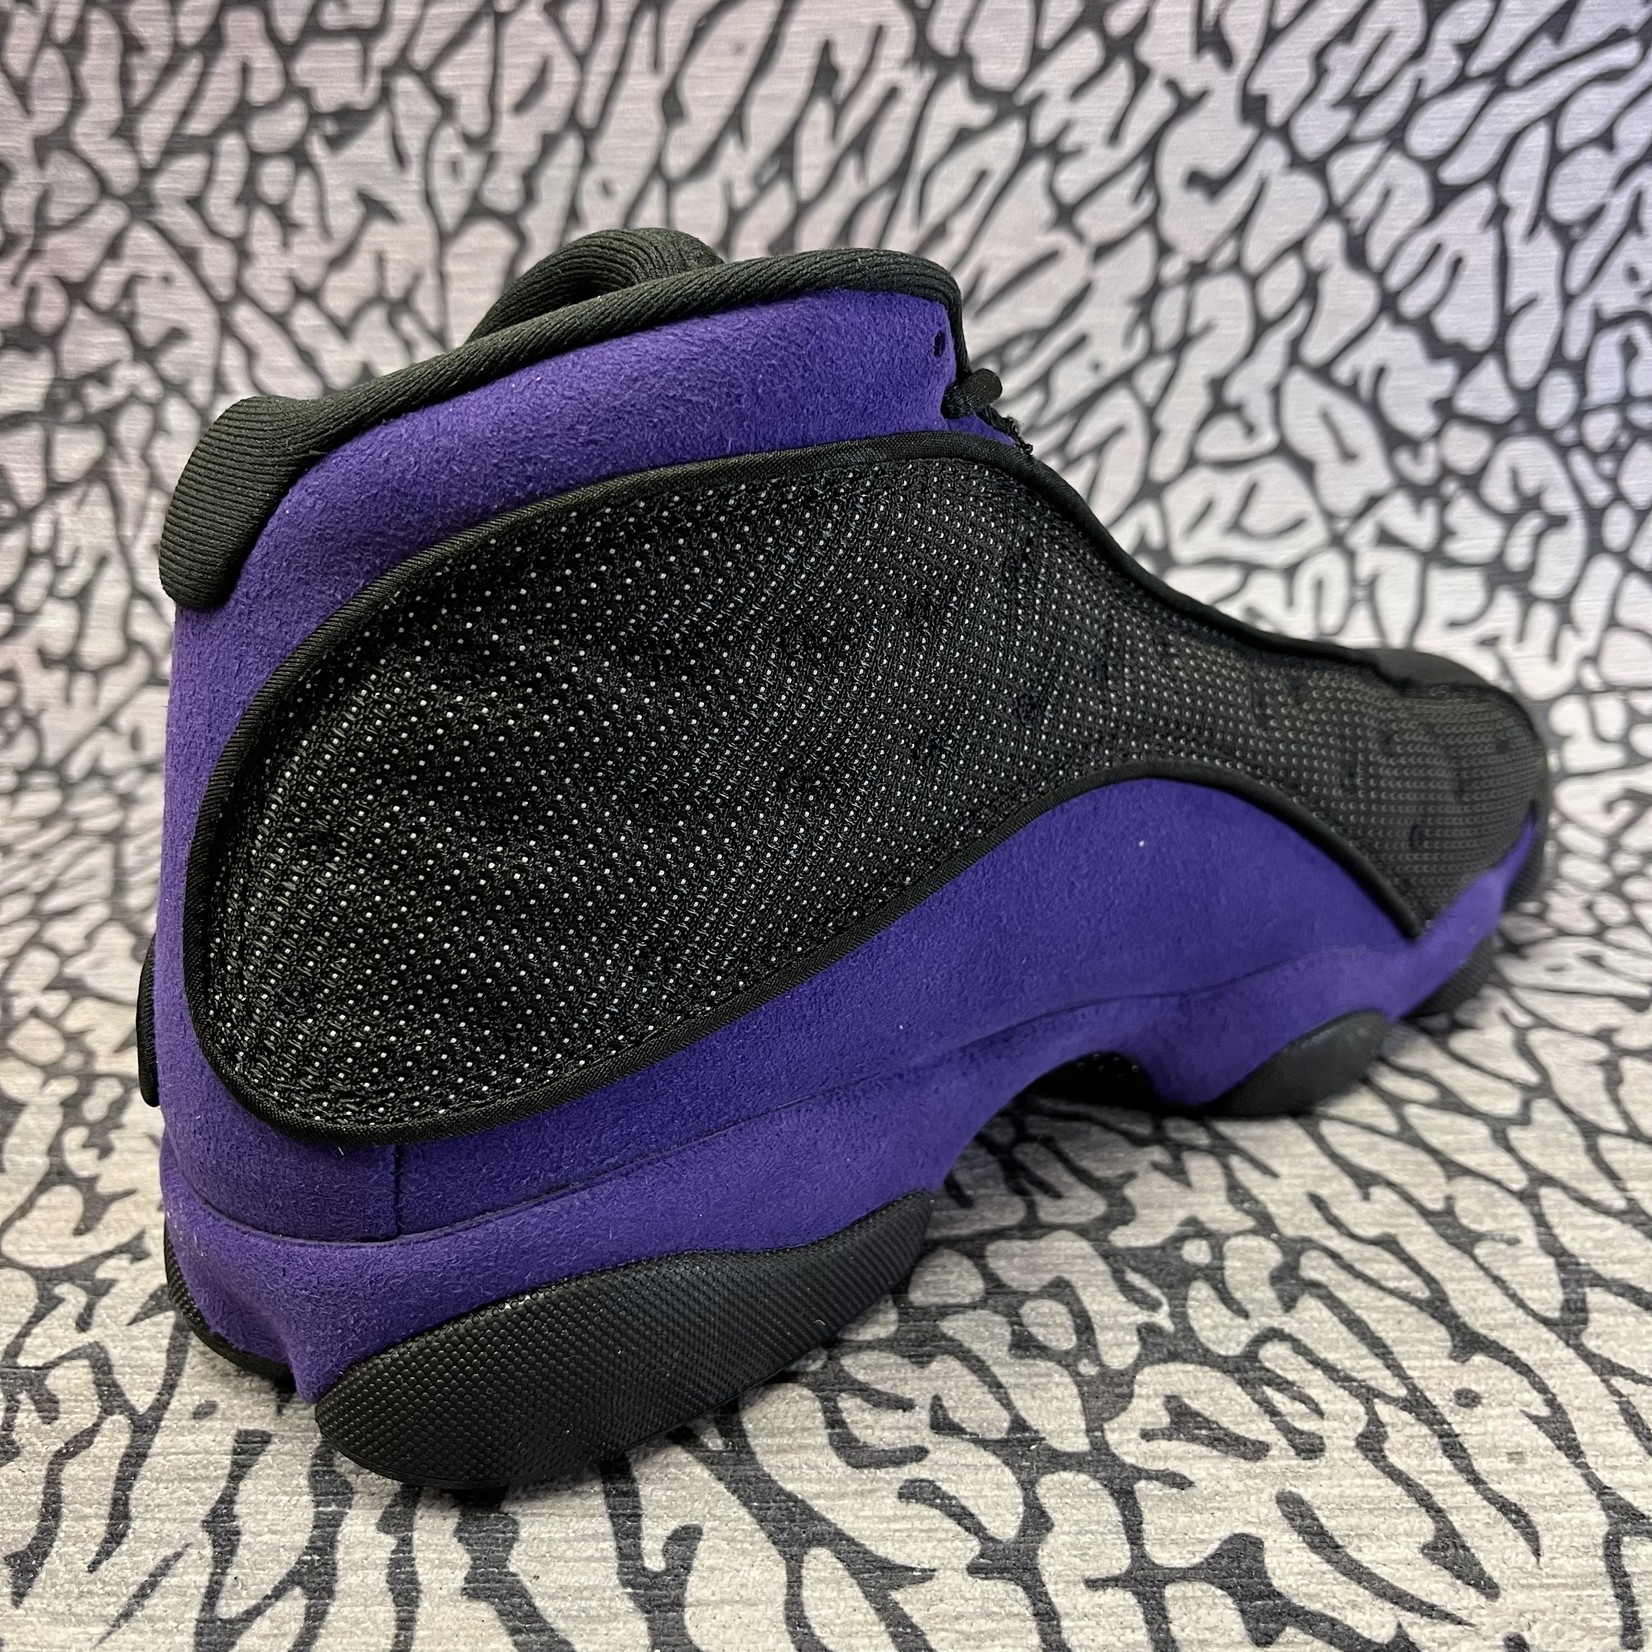 Air Jordan 13 Retro 'Court Purple